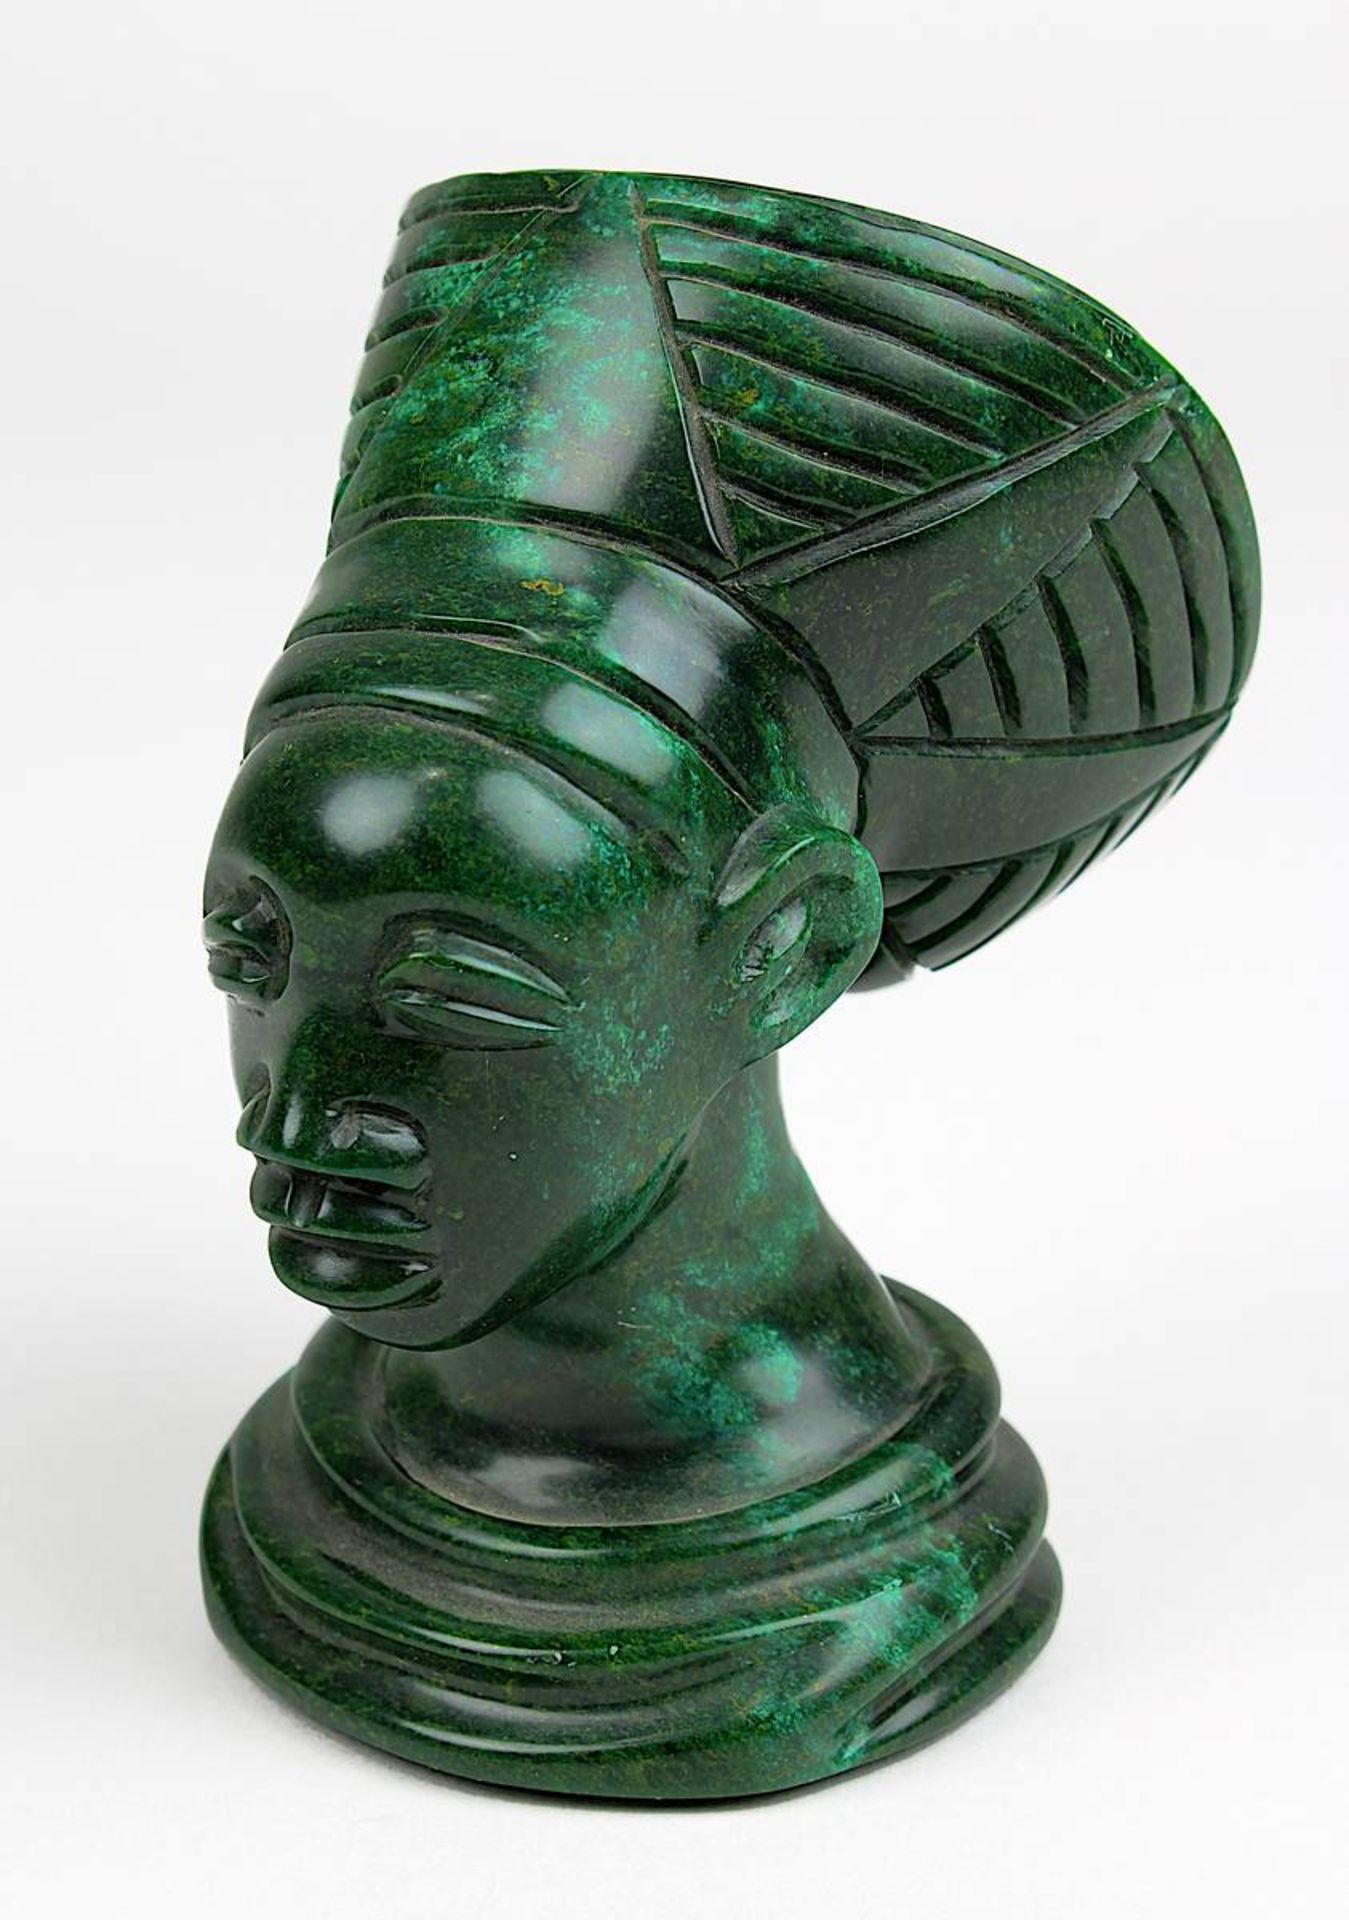 Büste einer Zulu-Frau aus dunkelgrünem Verdit, südafrikanische Steinschnitzerei, H 9 cm, Gewicht 398